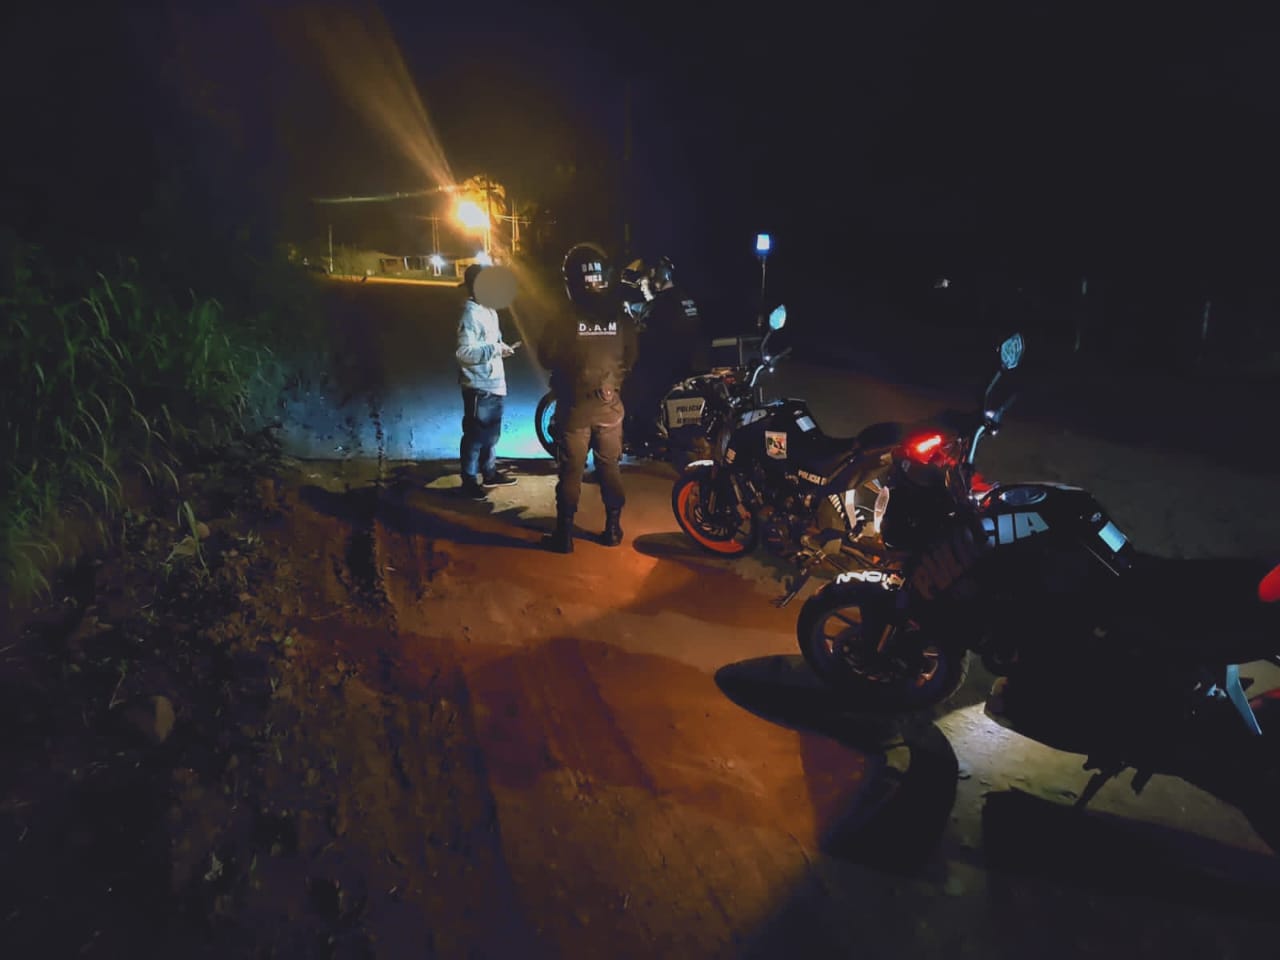 Con más de 800 motocicletas las patrullas motorizadas de la Policía refuerzan los operativos en la provincia imagen-6